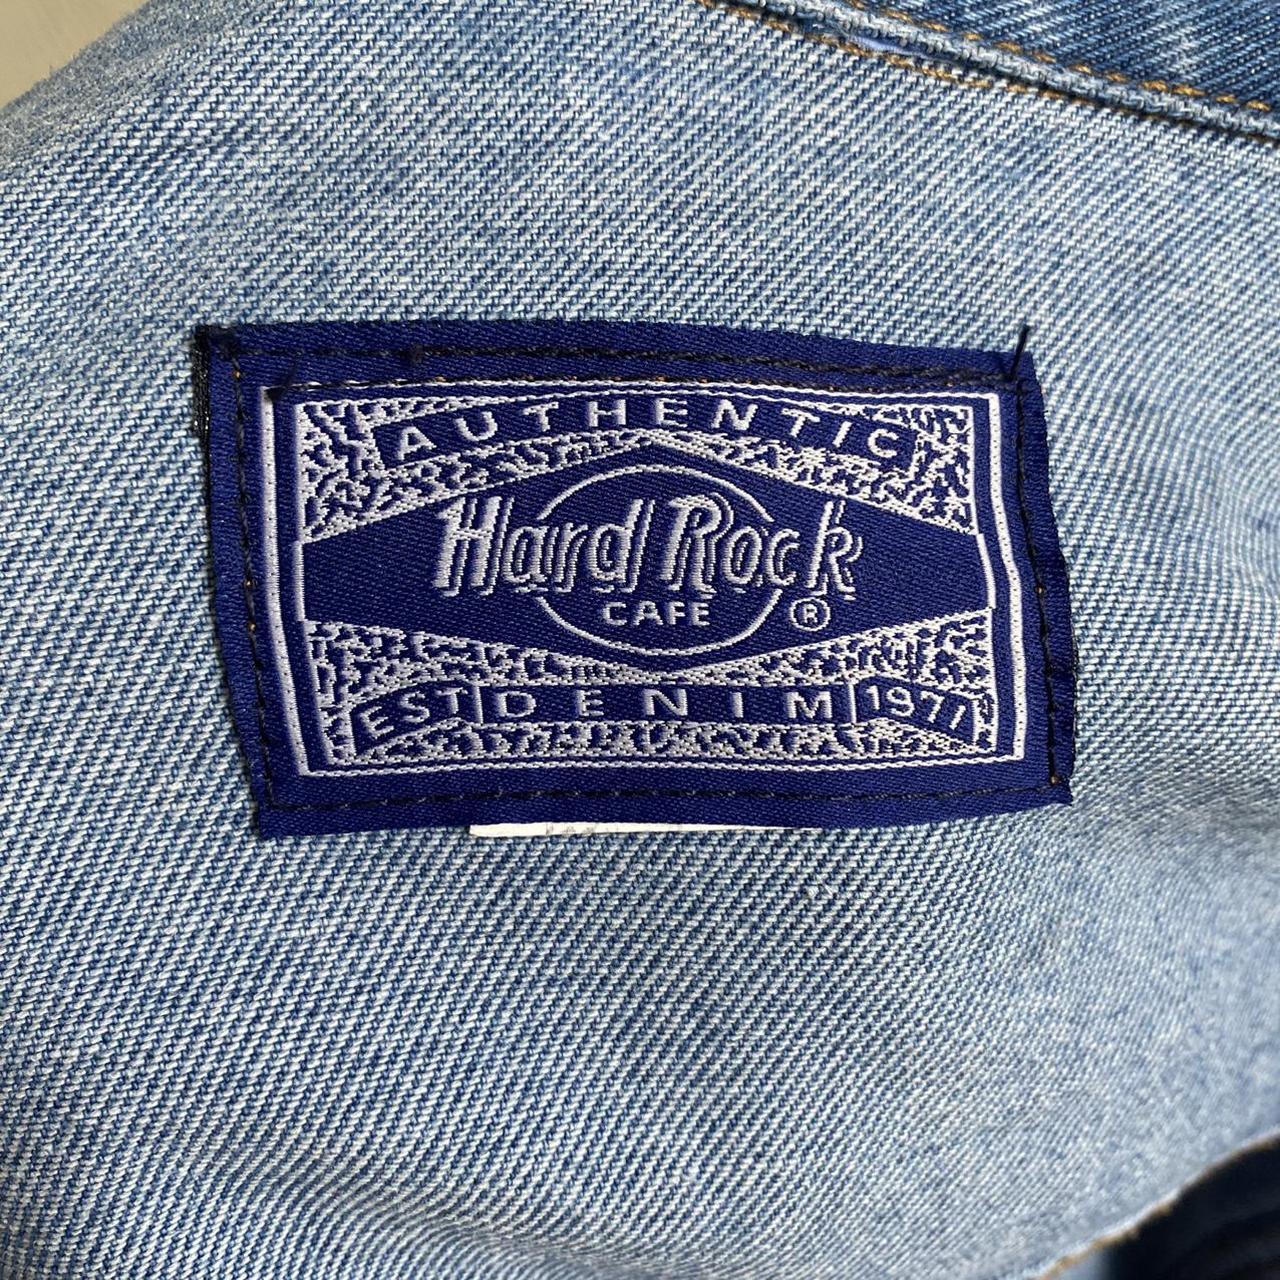 Product Image 4 - Hard Rock Cafe denim jacket